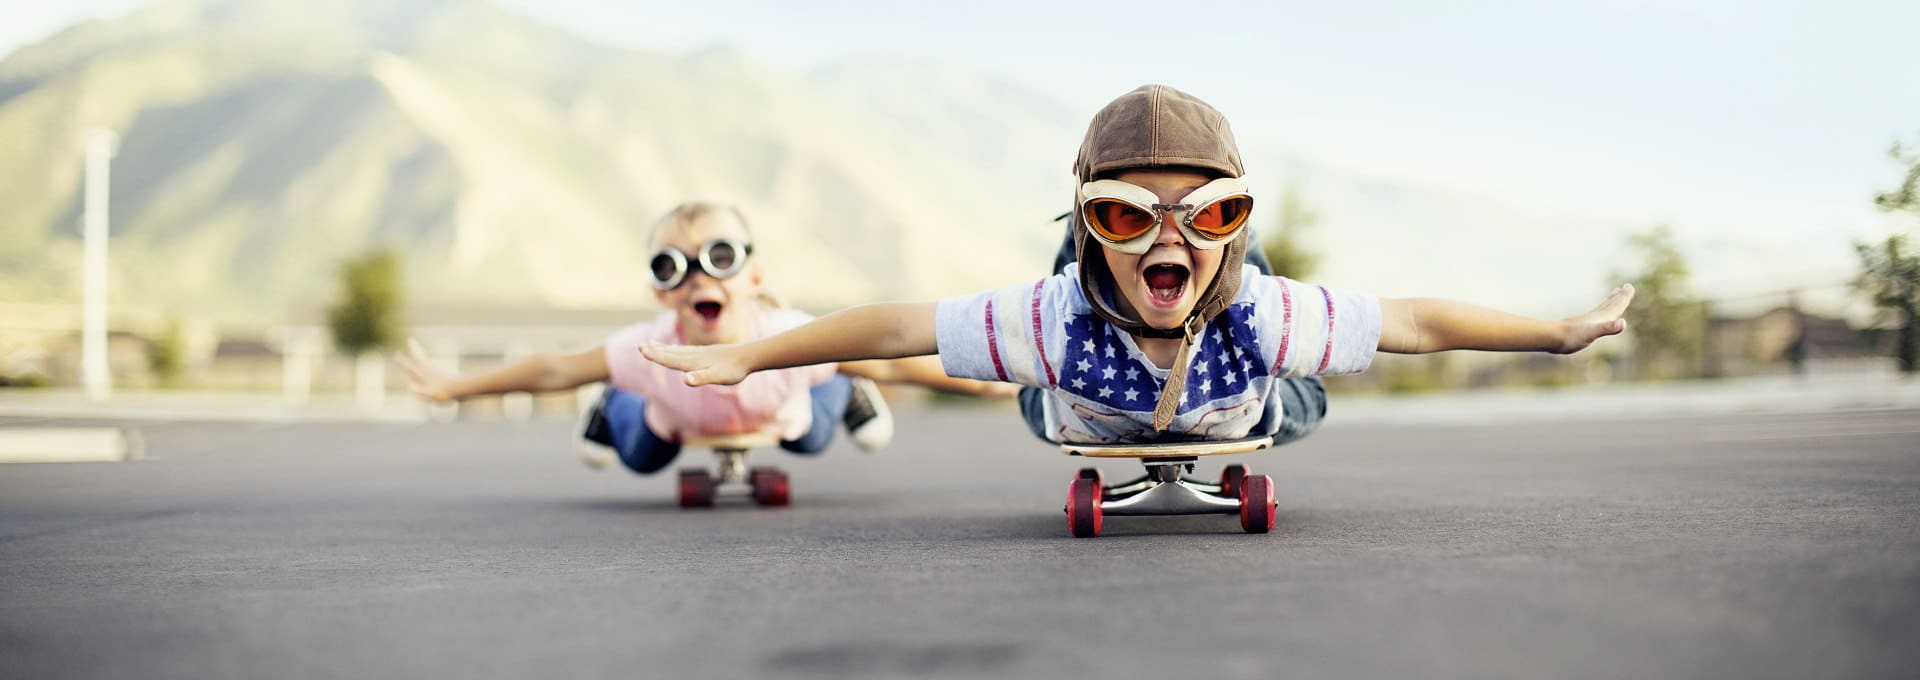 Zwei Kinder flitzen auf der Skateboards auf der Straße entlang